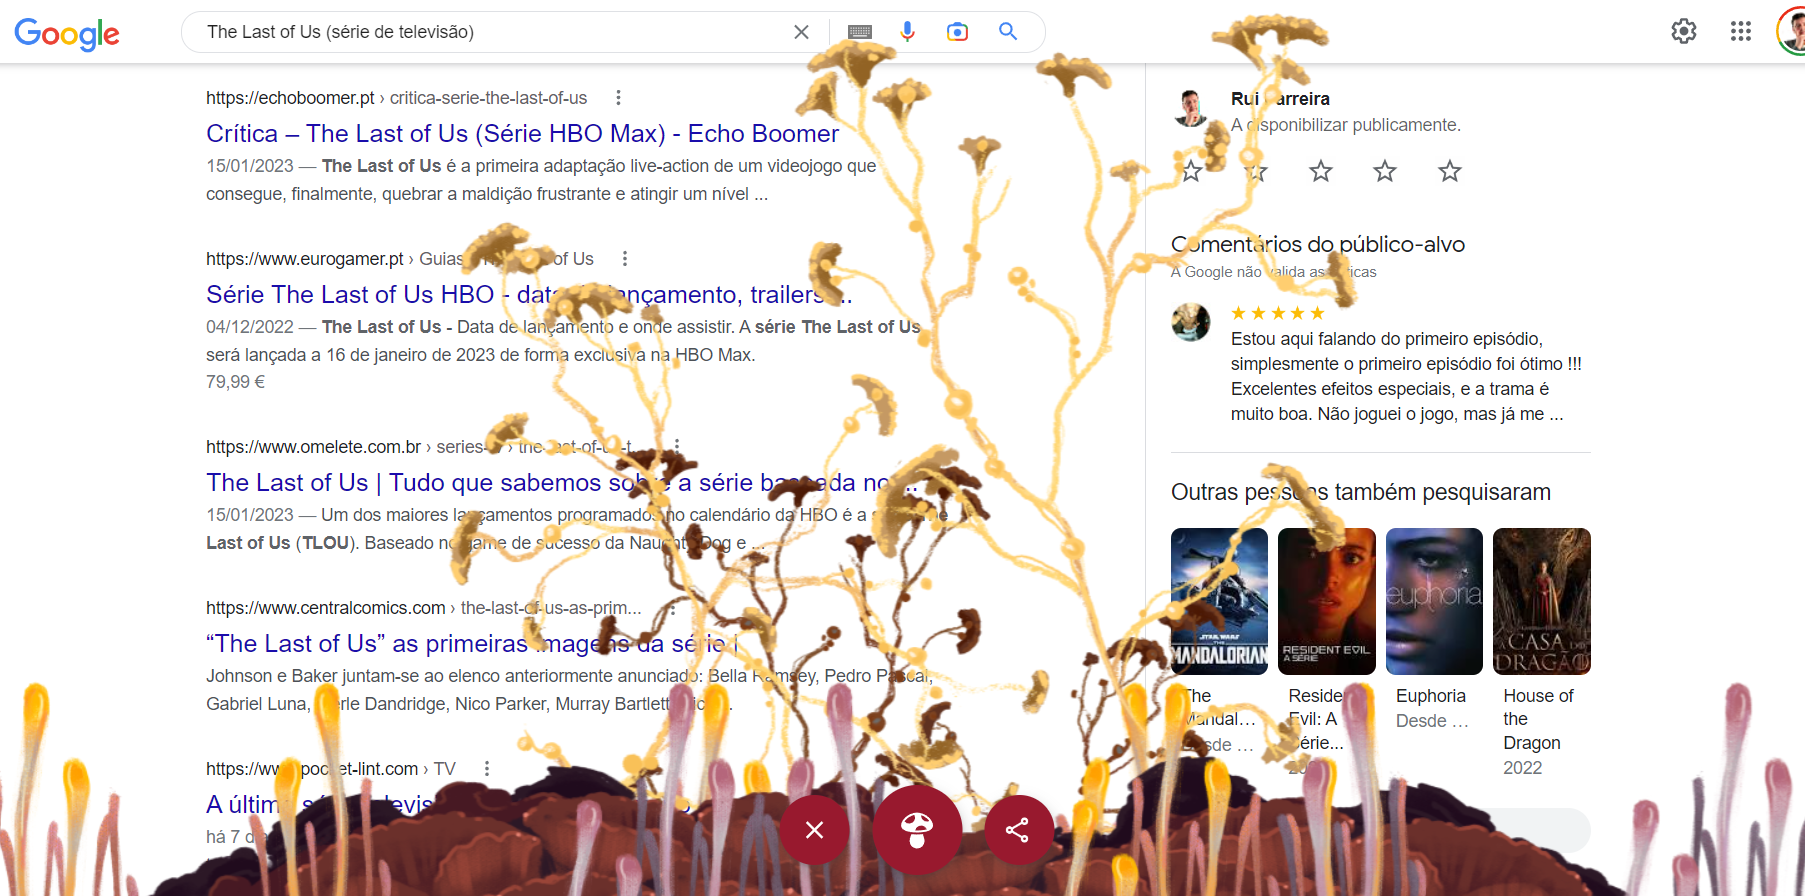 Os fungos do The Last of Us invadiram as pesquisas da Google